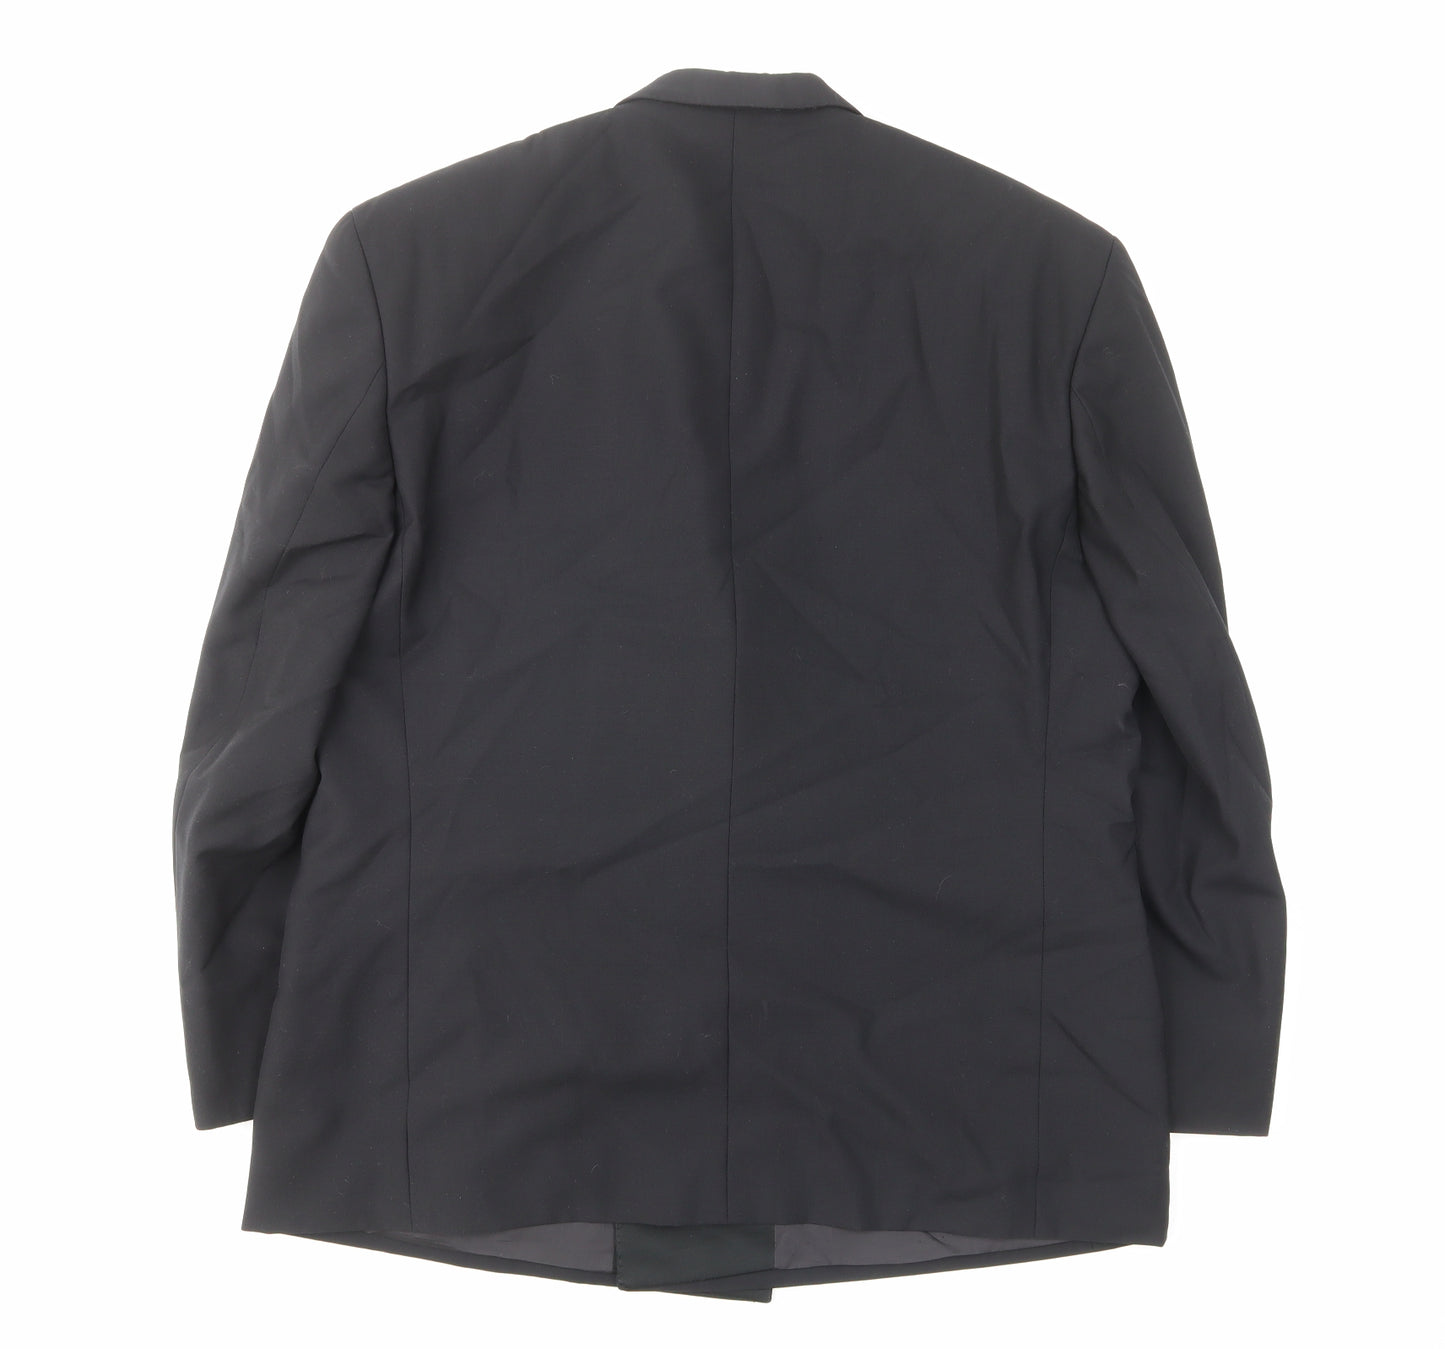 Baumler Mens Black Wool Jacket Suit Jacket Size 40 Regular - Inside pockets